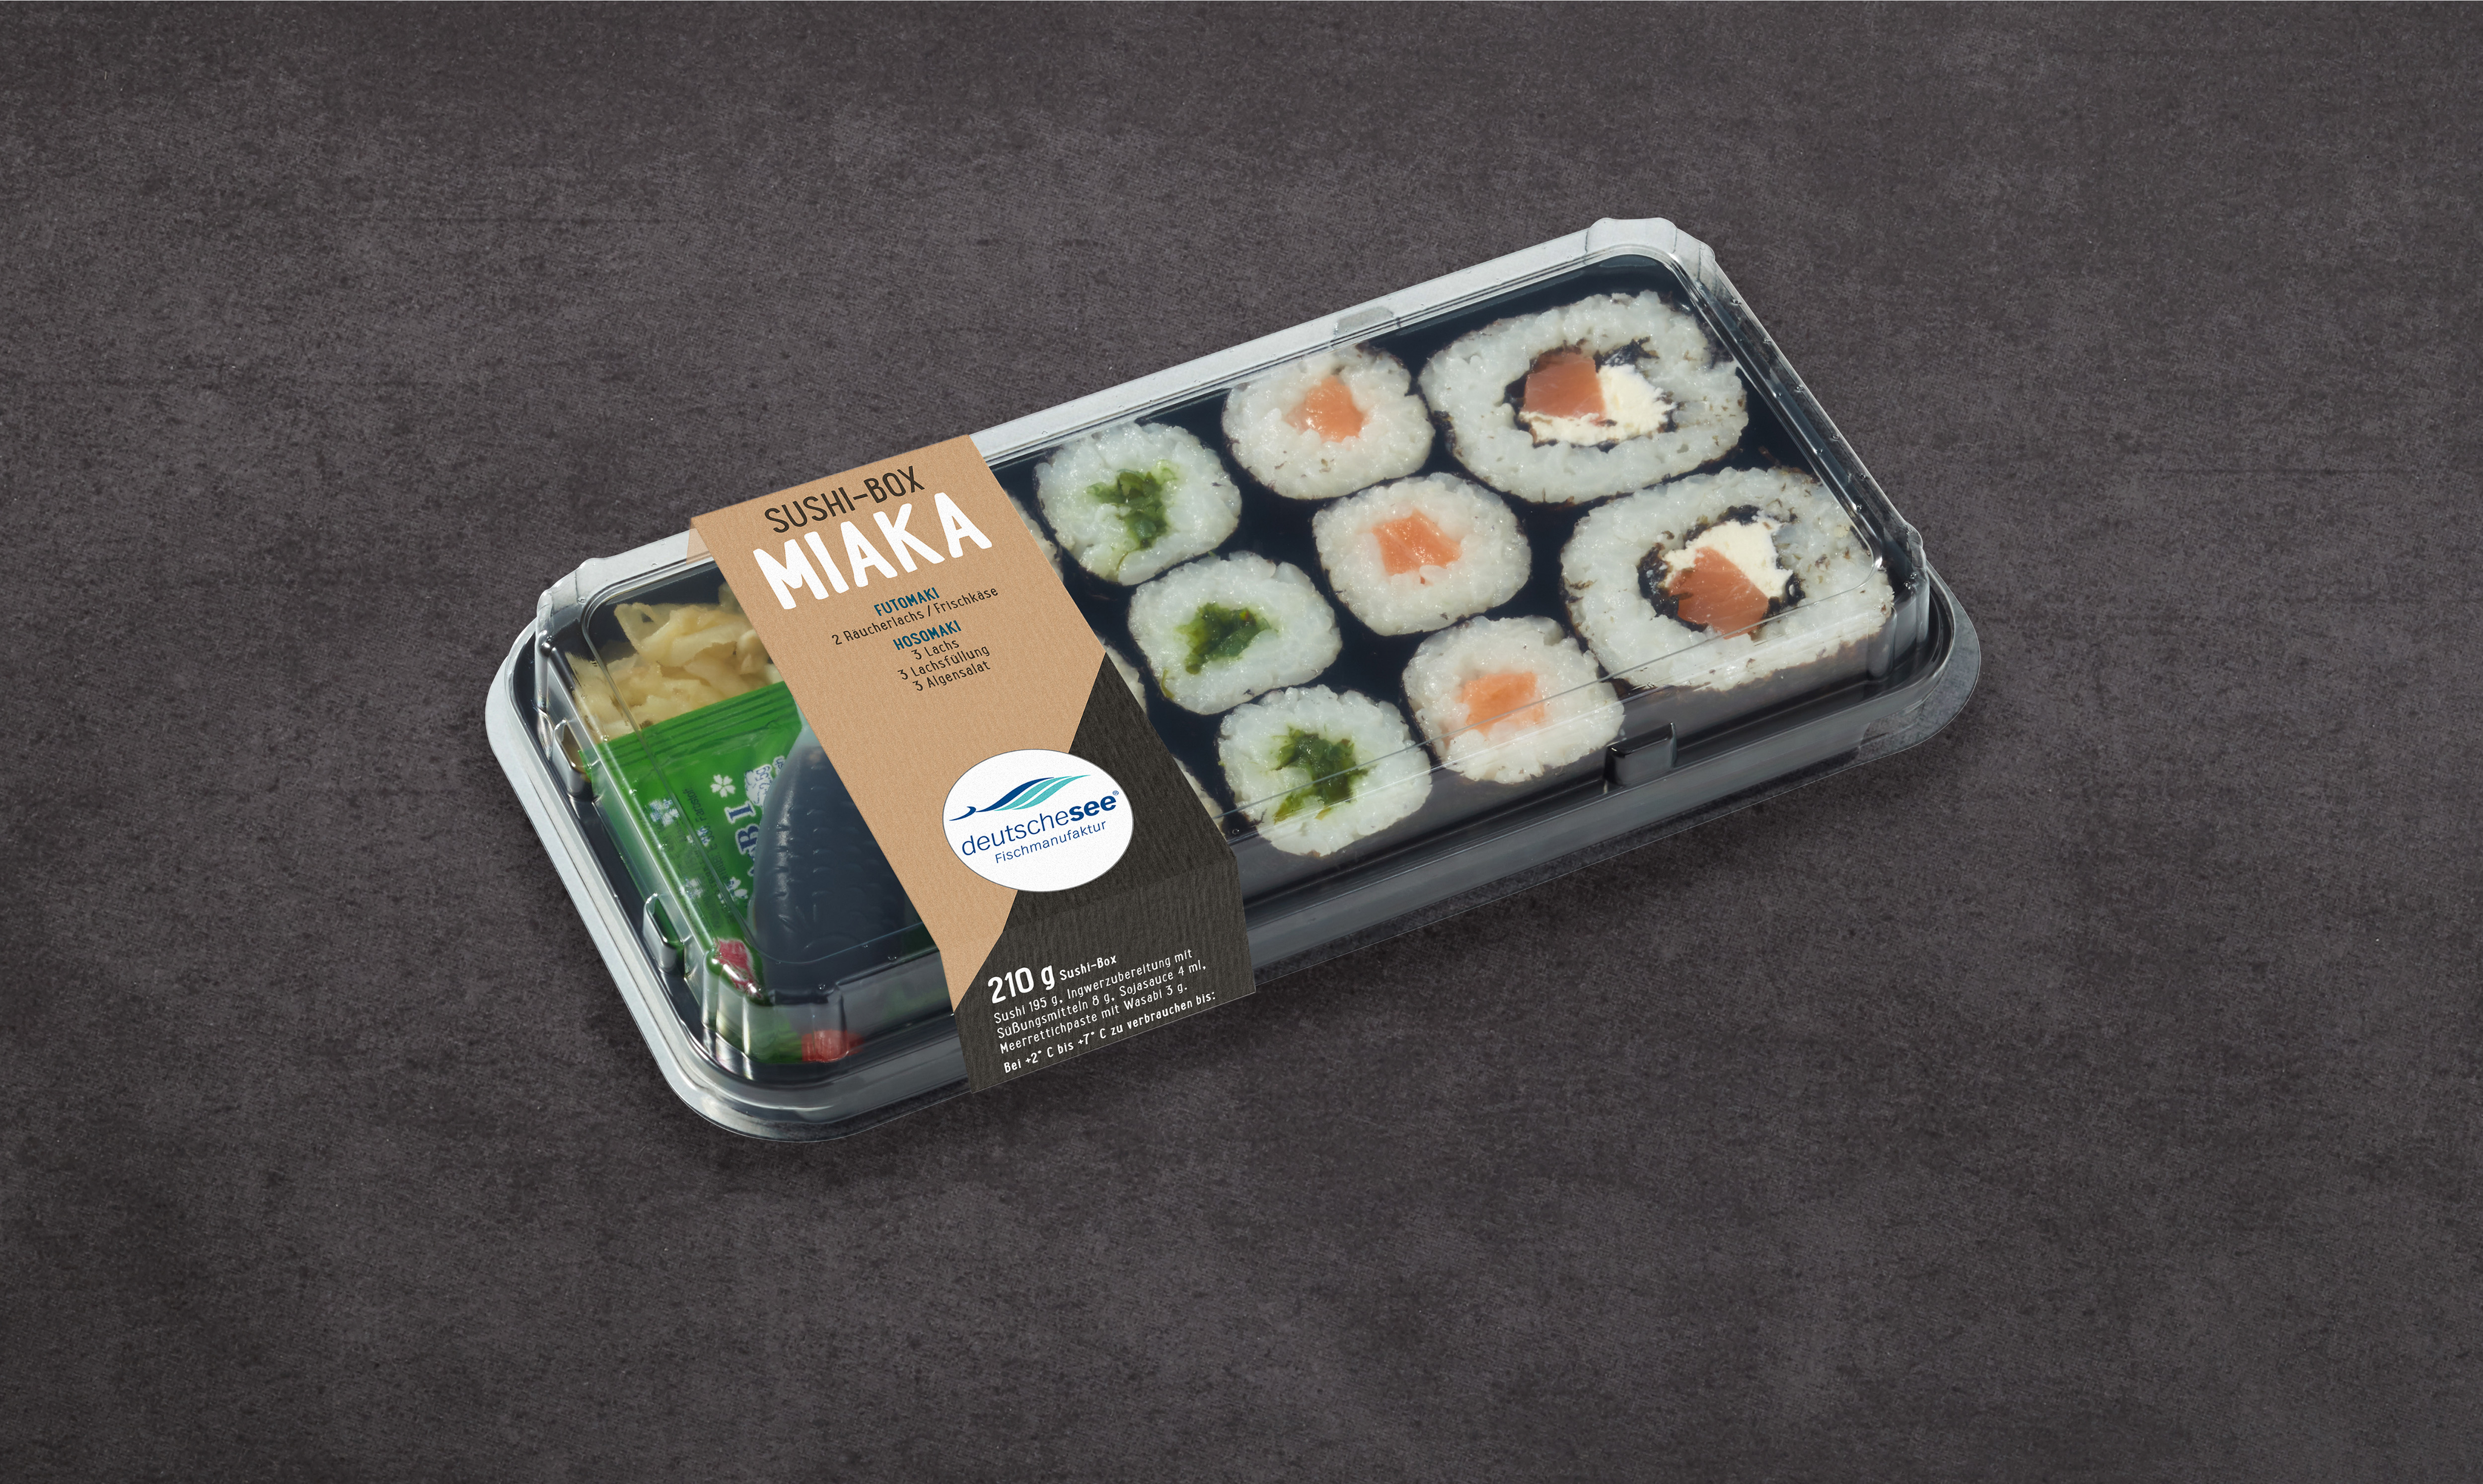 Sushi-Box MIAKA